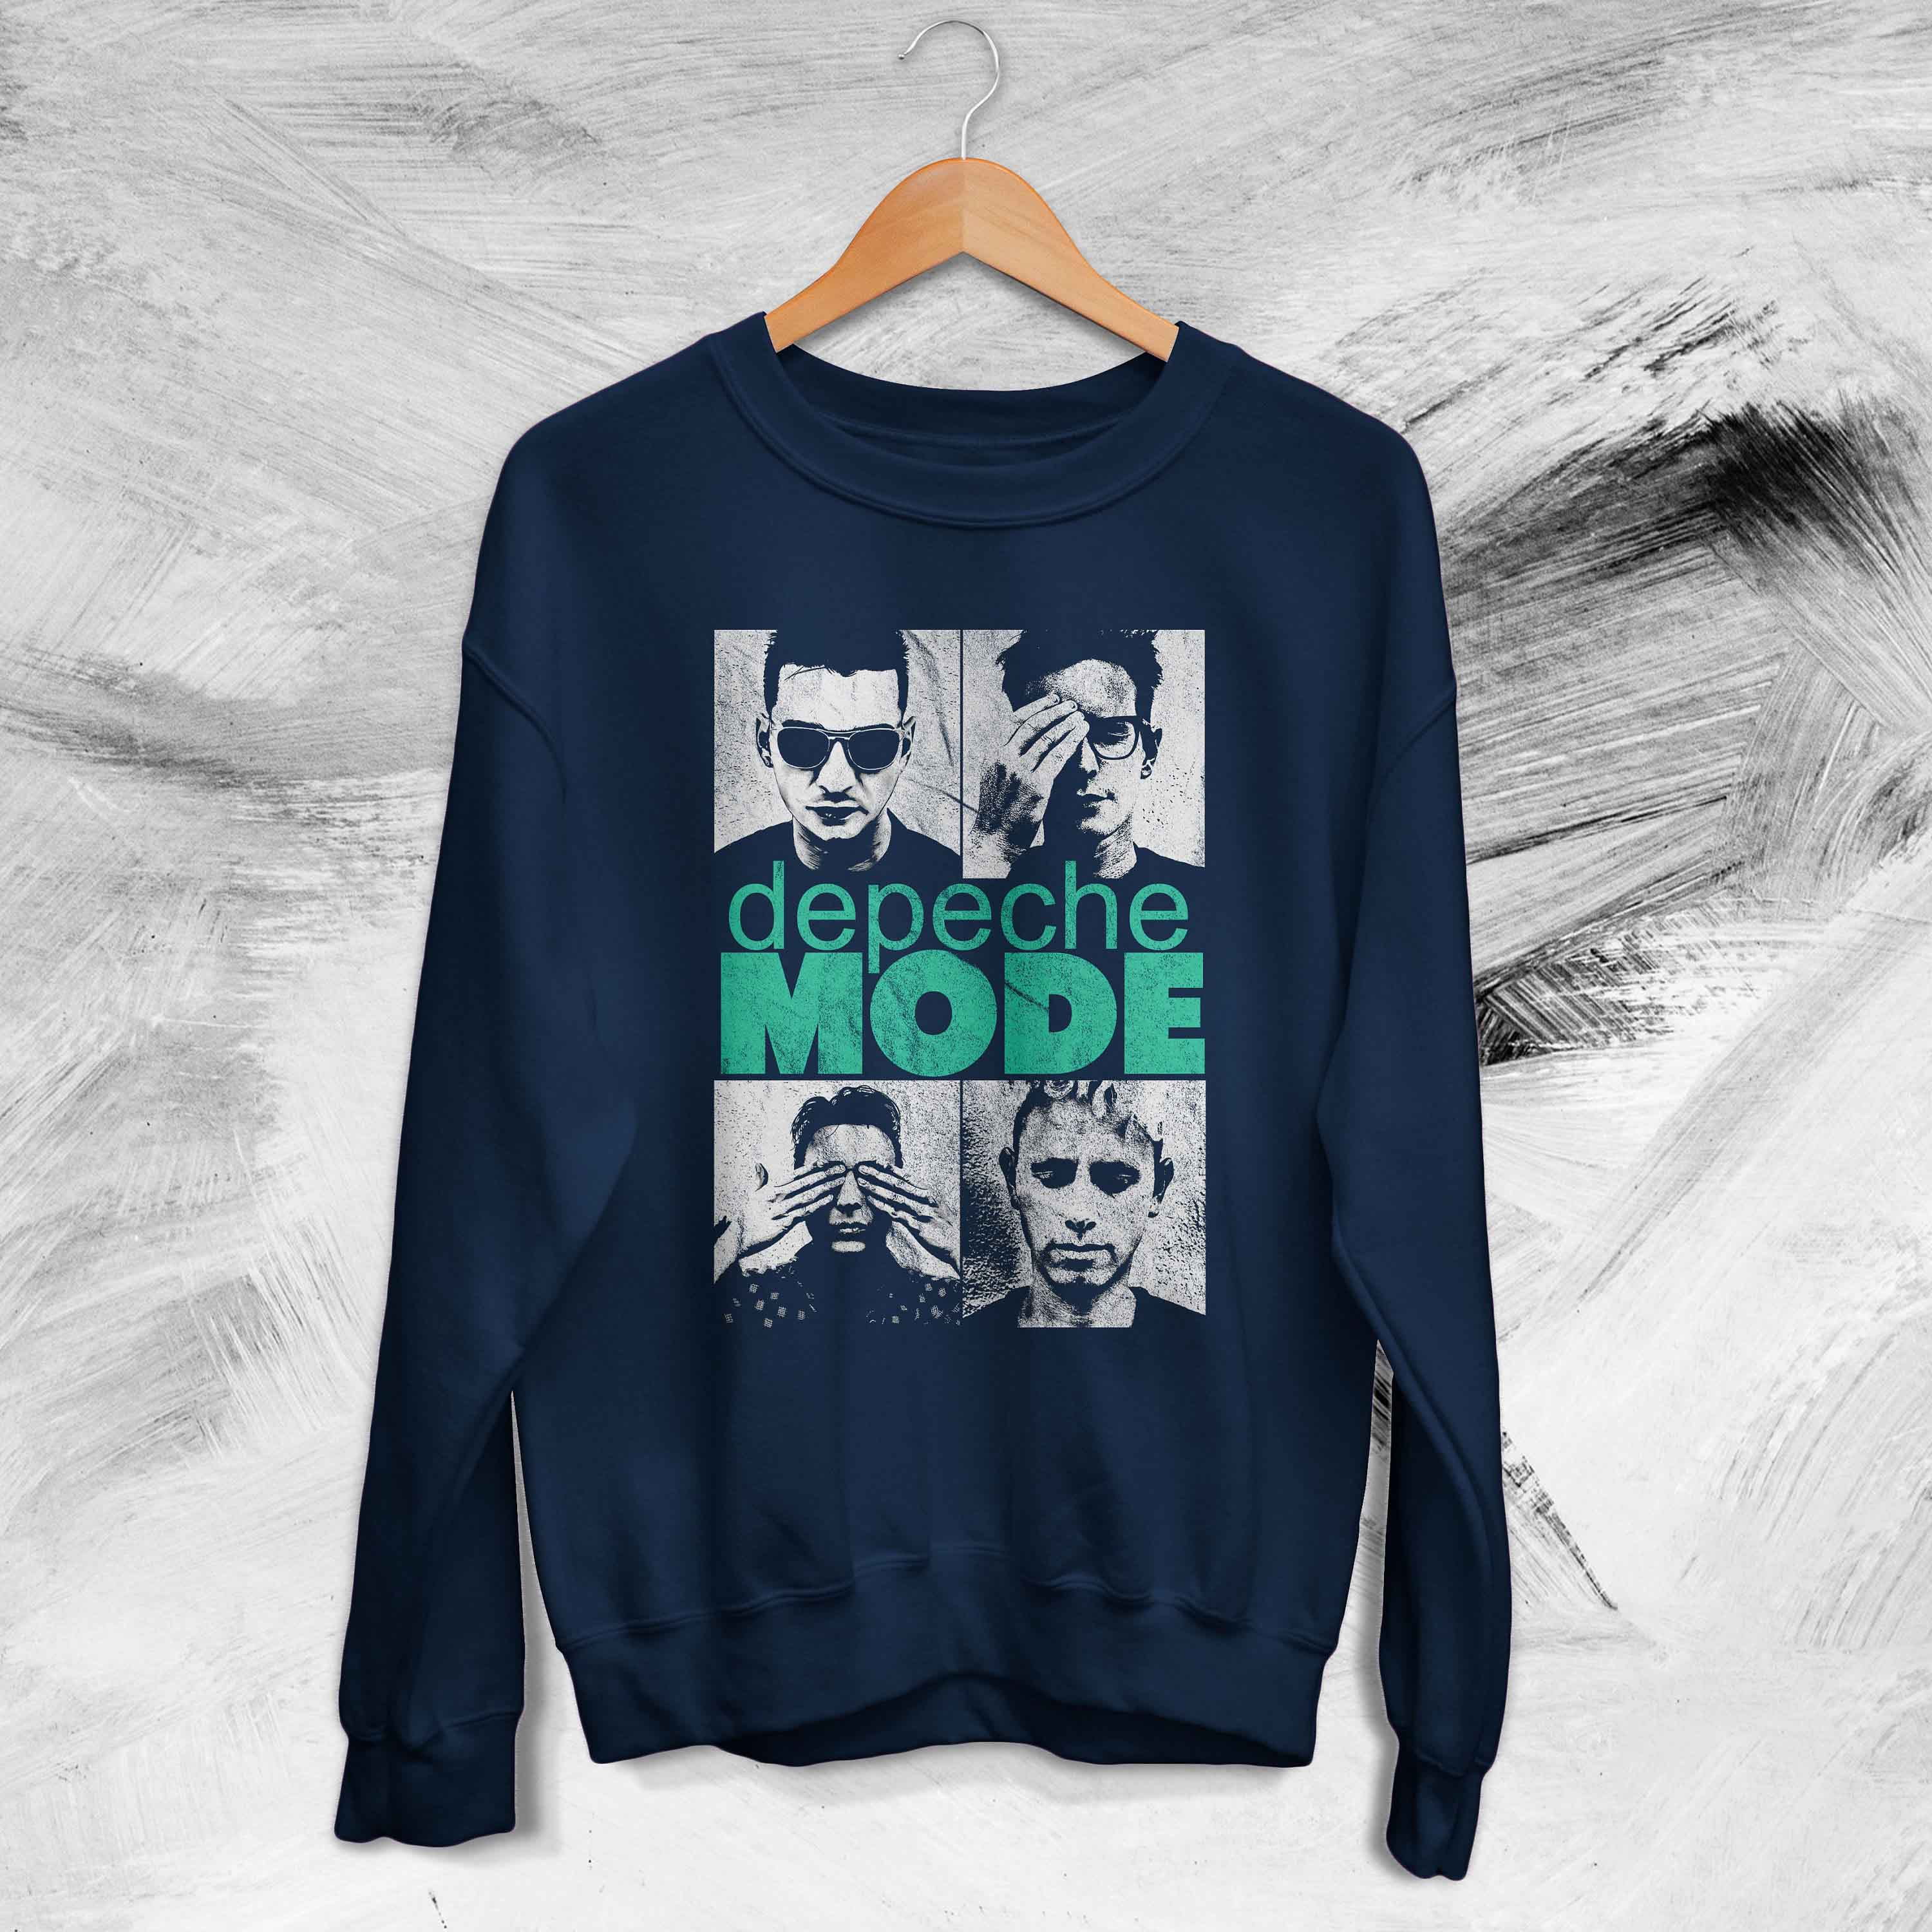 Depeche Mode Tour 90's Vintage Rock Music Graphic Unisex T-Shirt